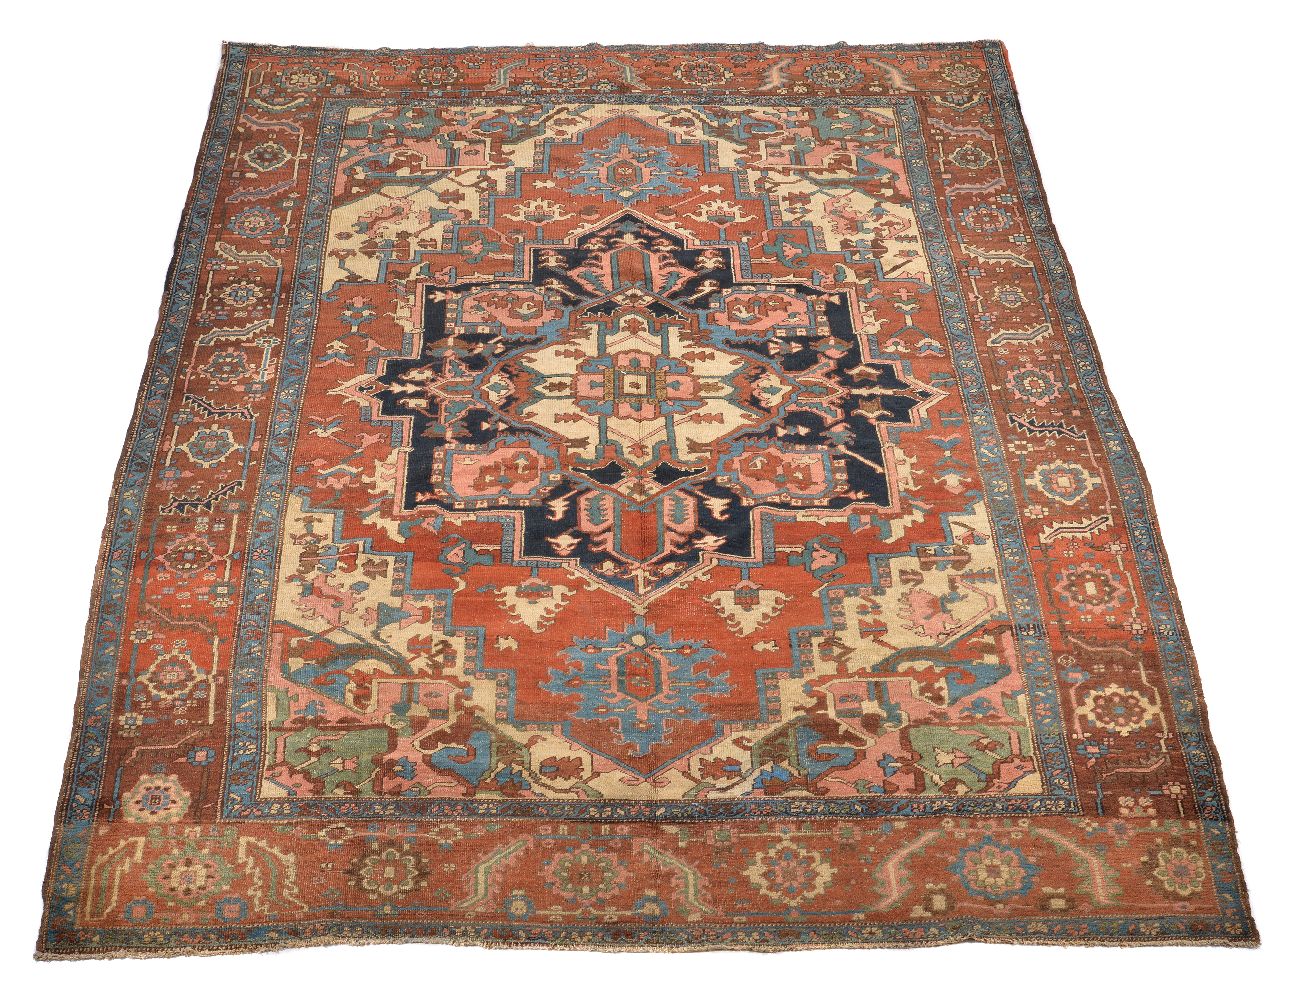 A Serapi carpet